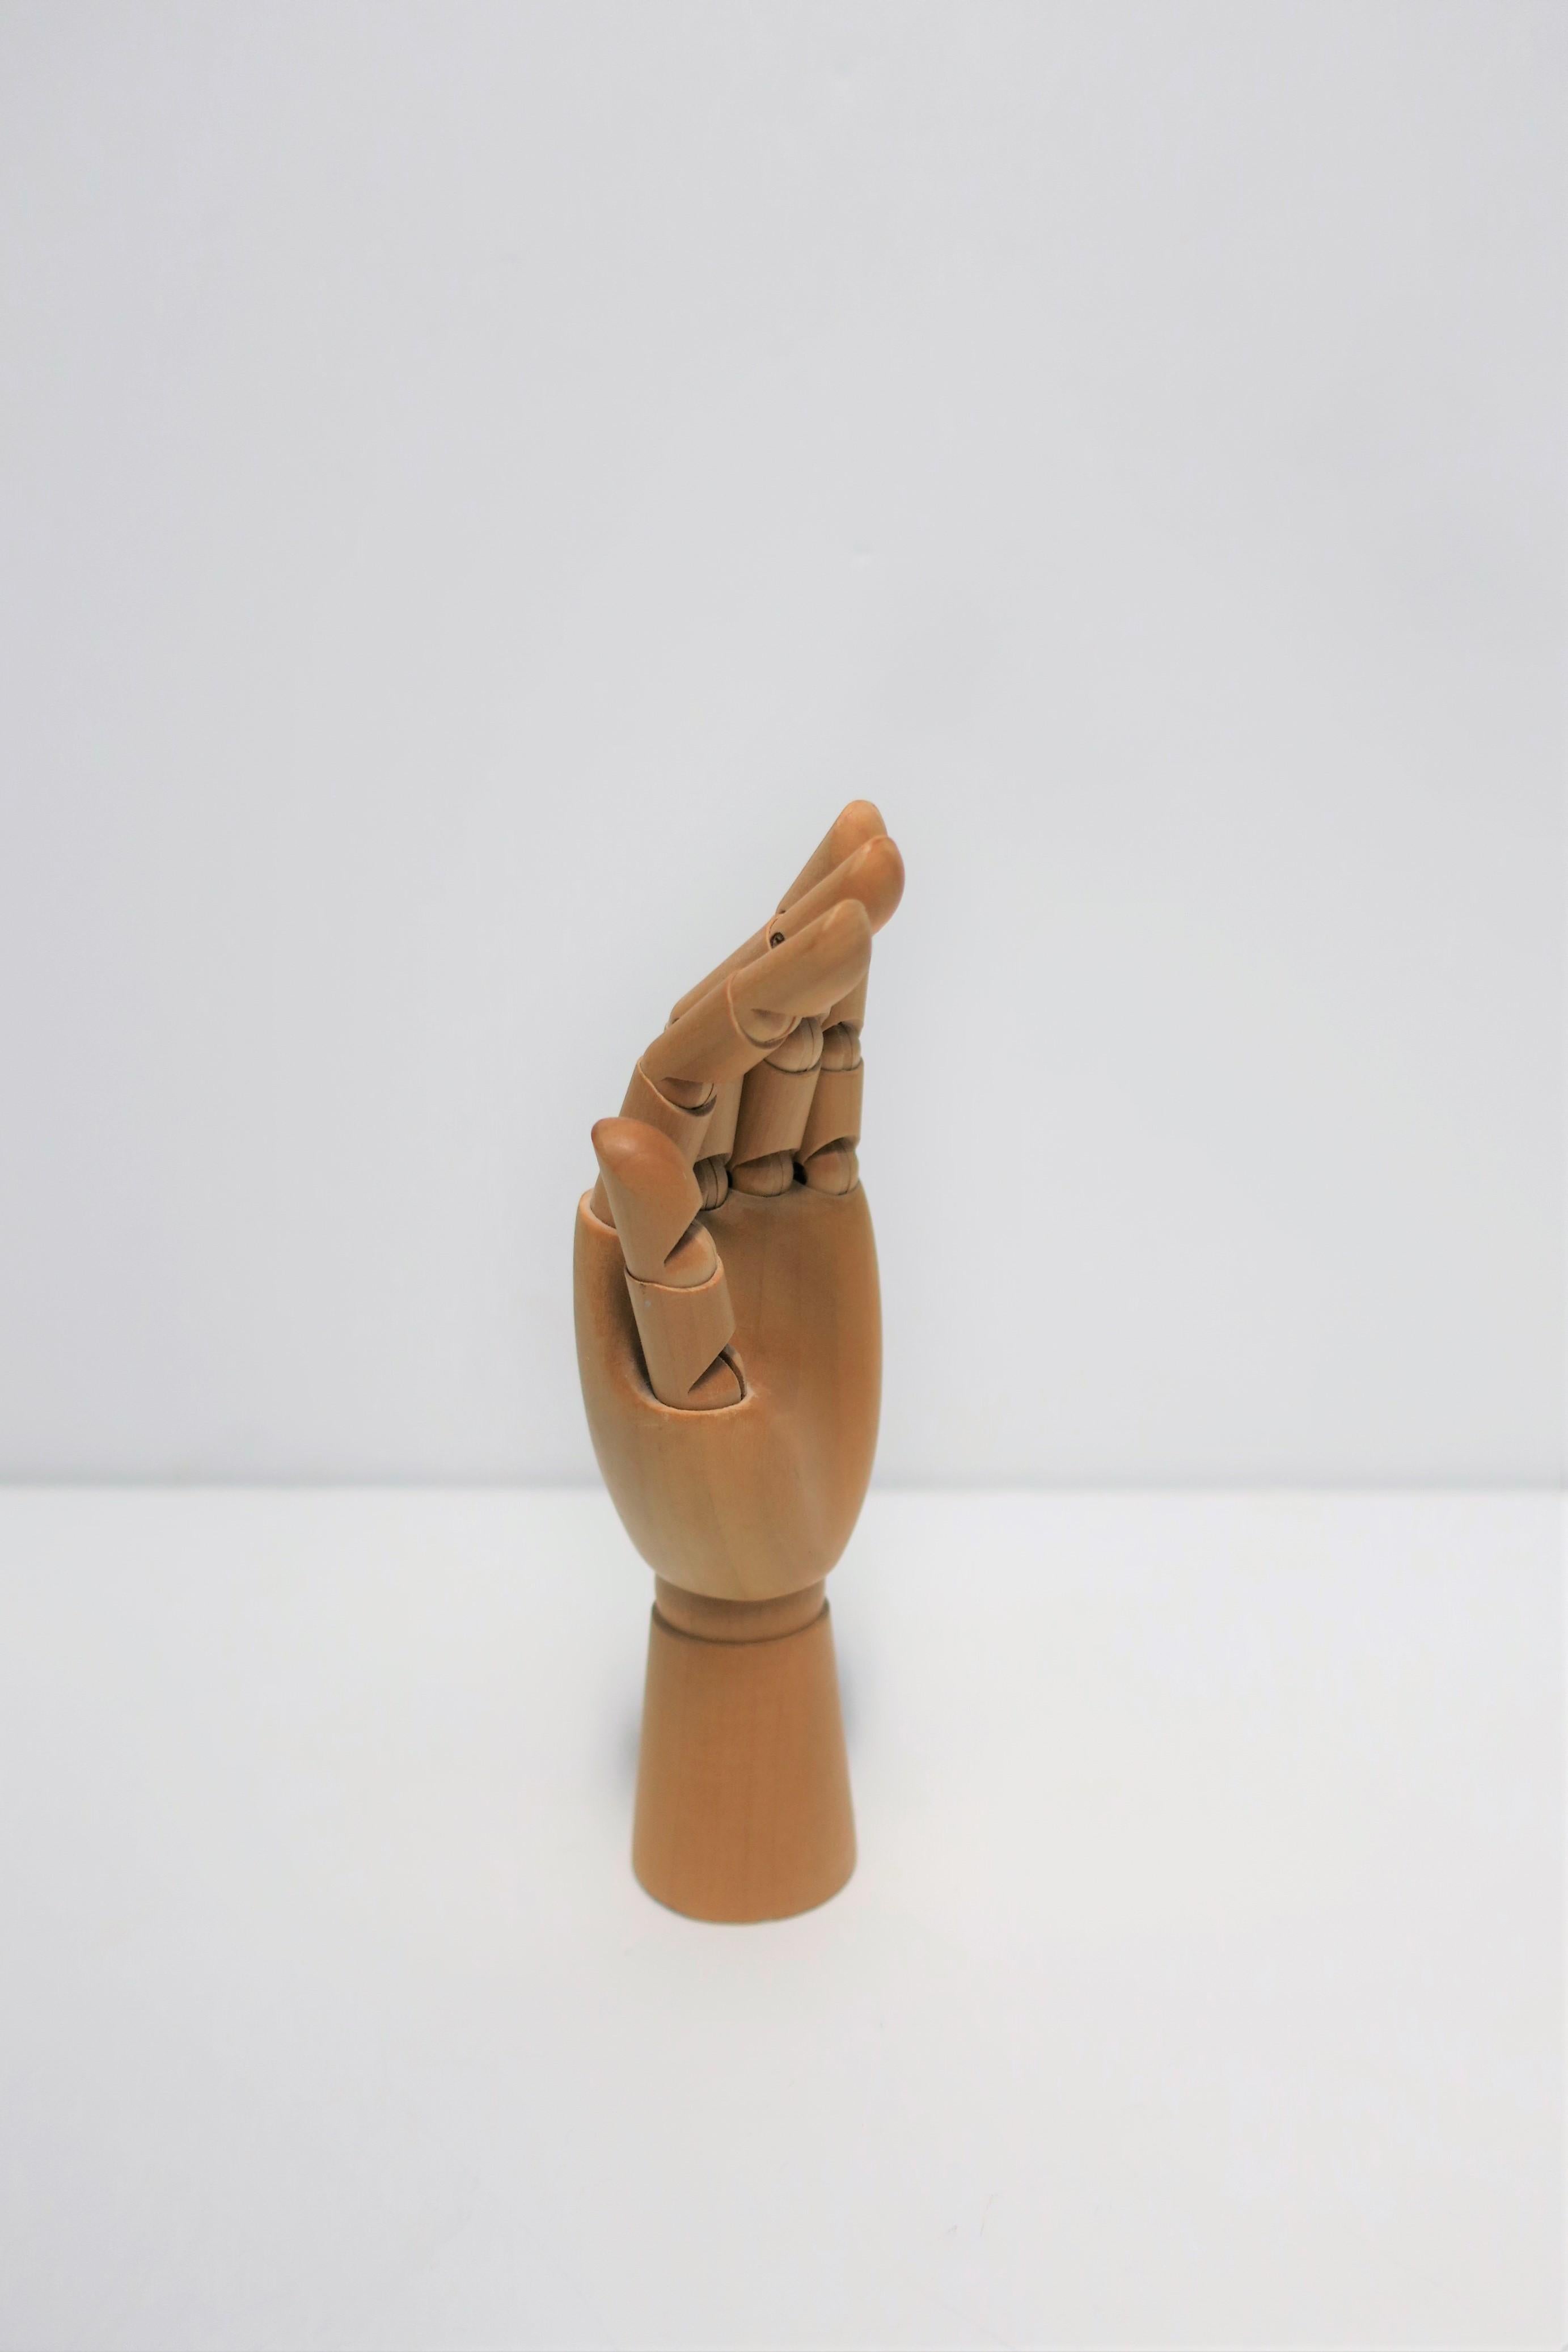 Articulating Wood Hand Sculpture Piece 7